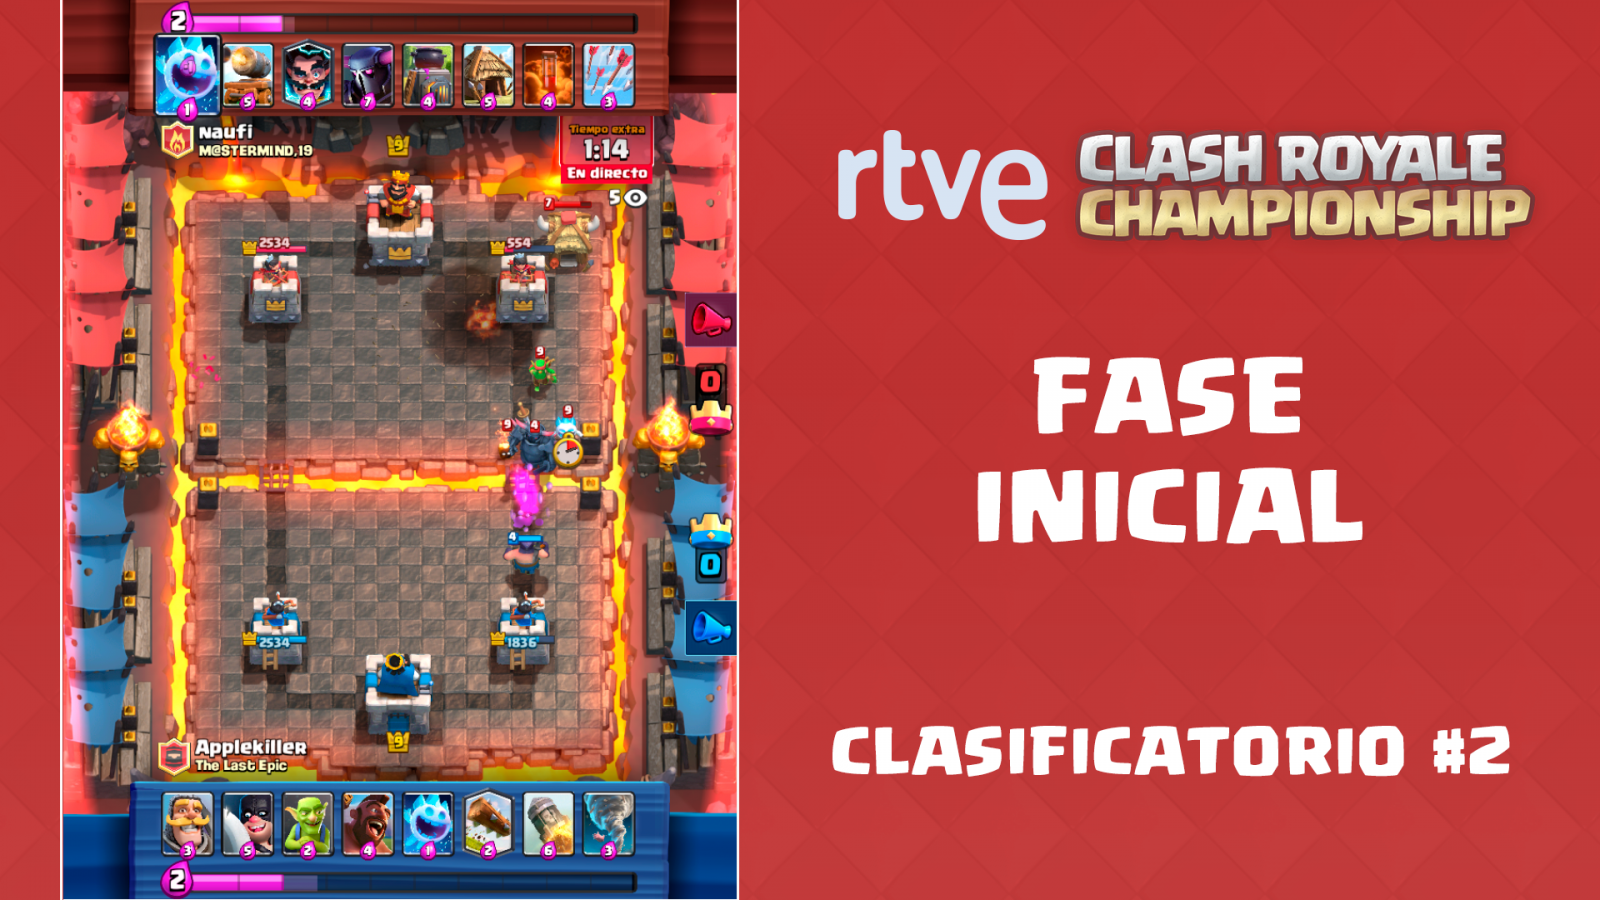 RTVE Clash Royale Championship. Clasificatorio #2 - Fase inicial